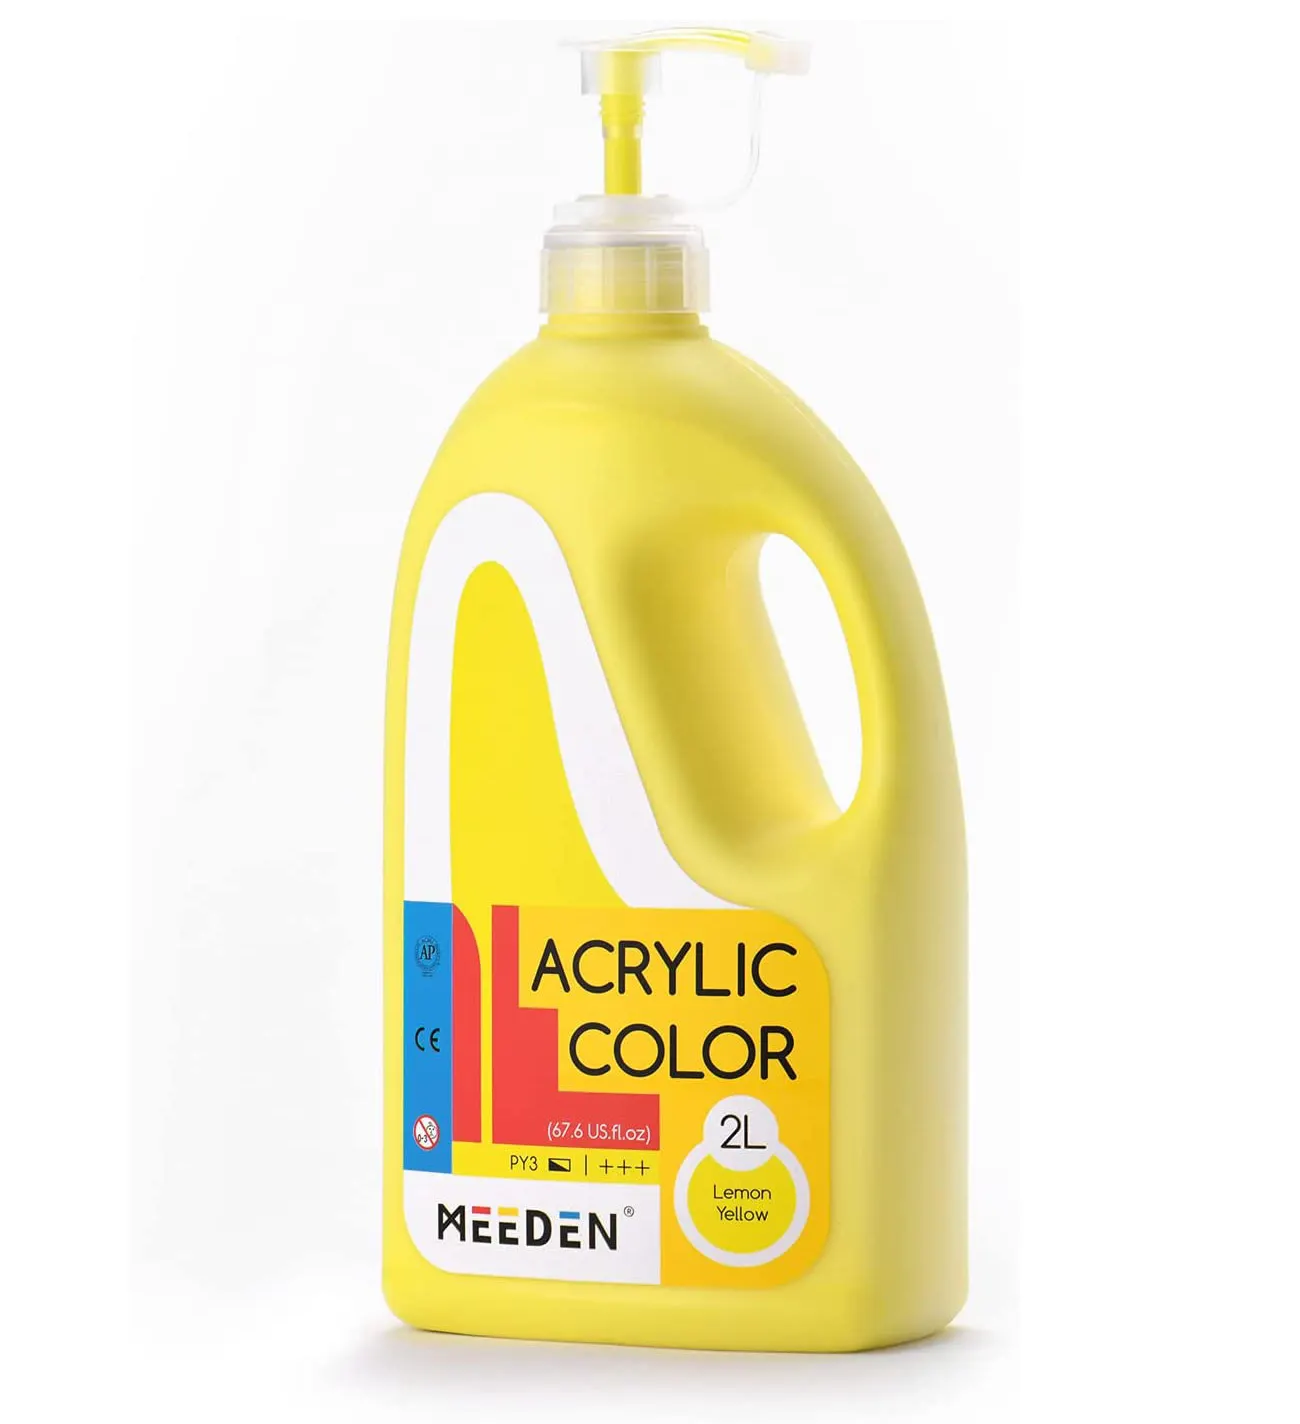 MEEDEN 1/2 गैलन 2L /67.6 oz. भारी-शरीर गैर विषैले अमीर वर्णक रंग नींबू पीले पंप ढक्कन के साथ एक्रिलिक पेंट